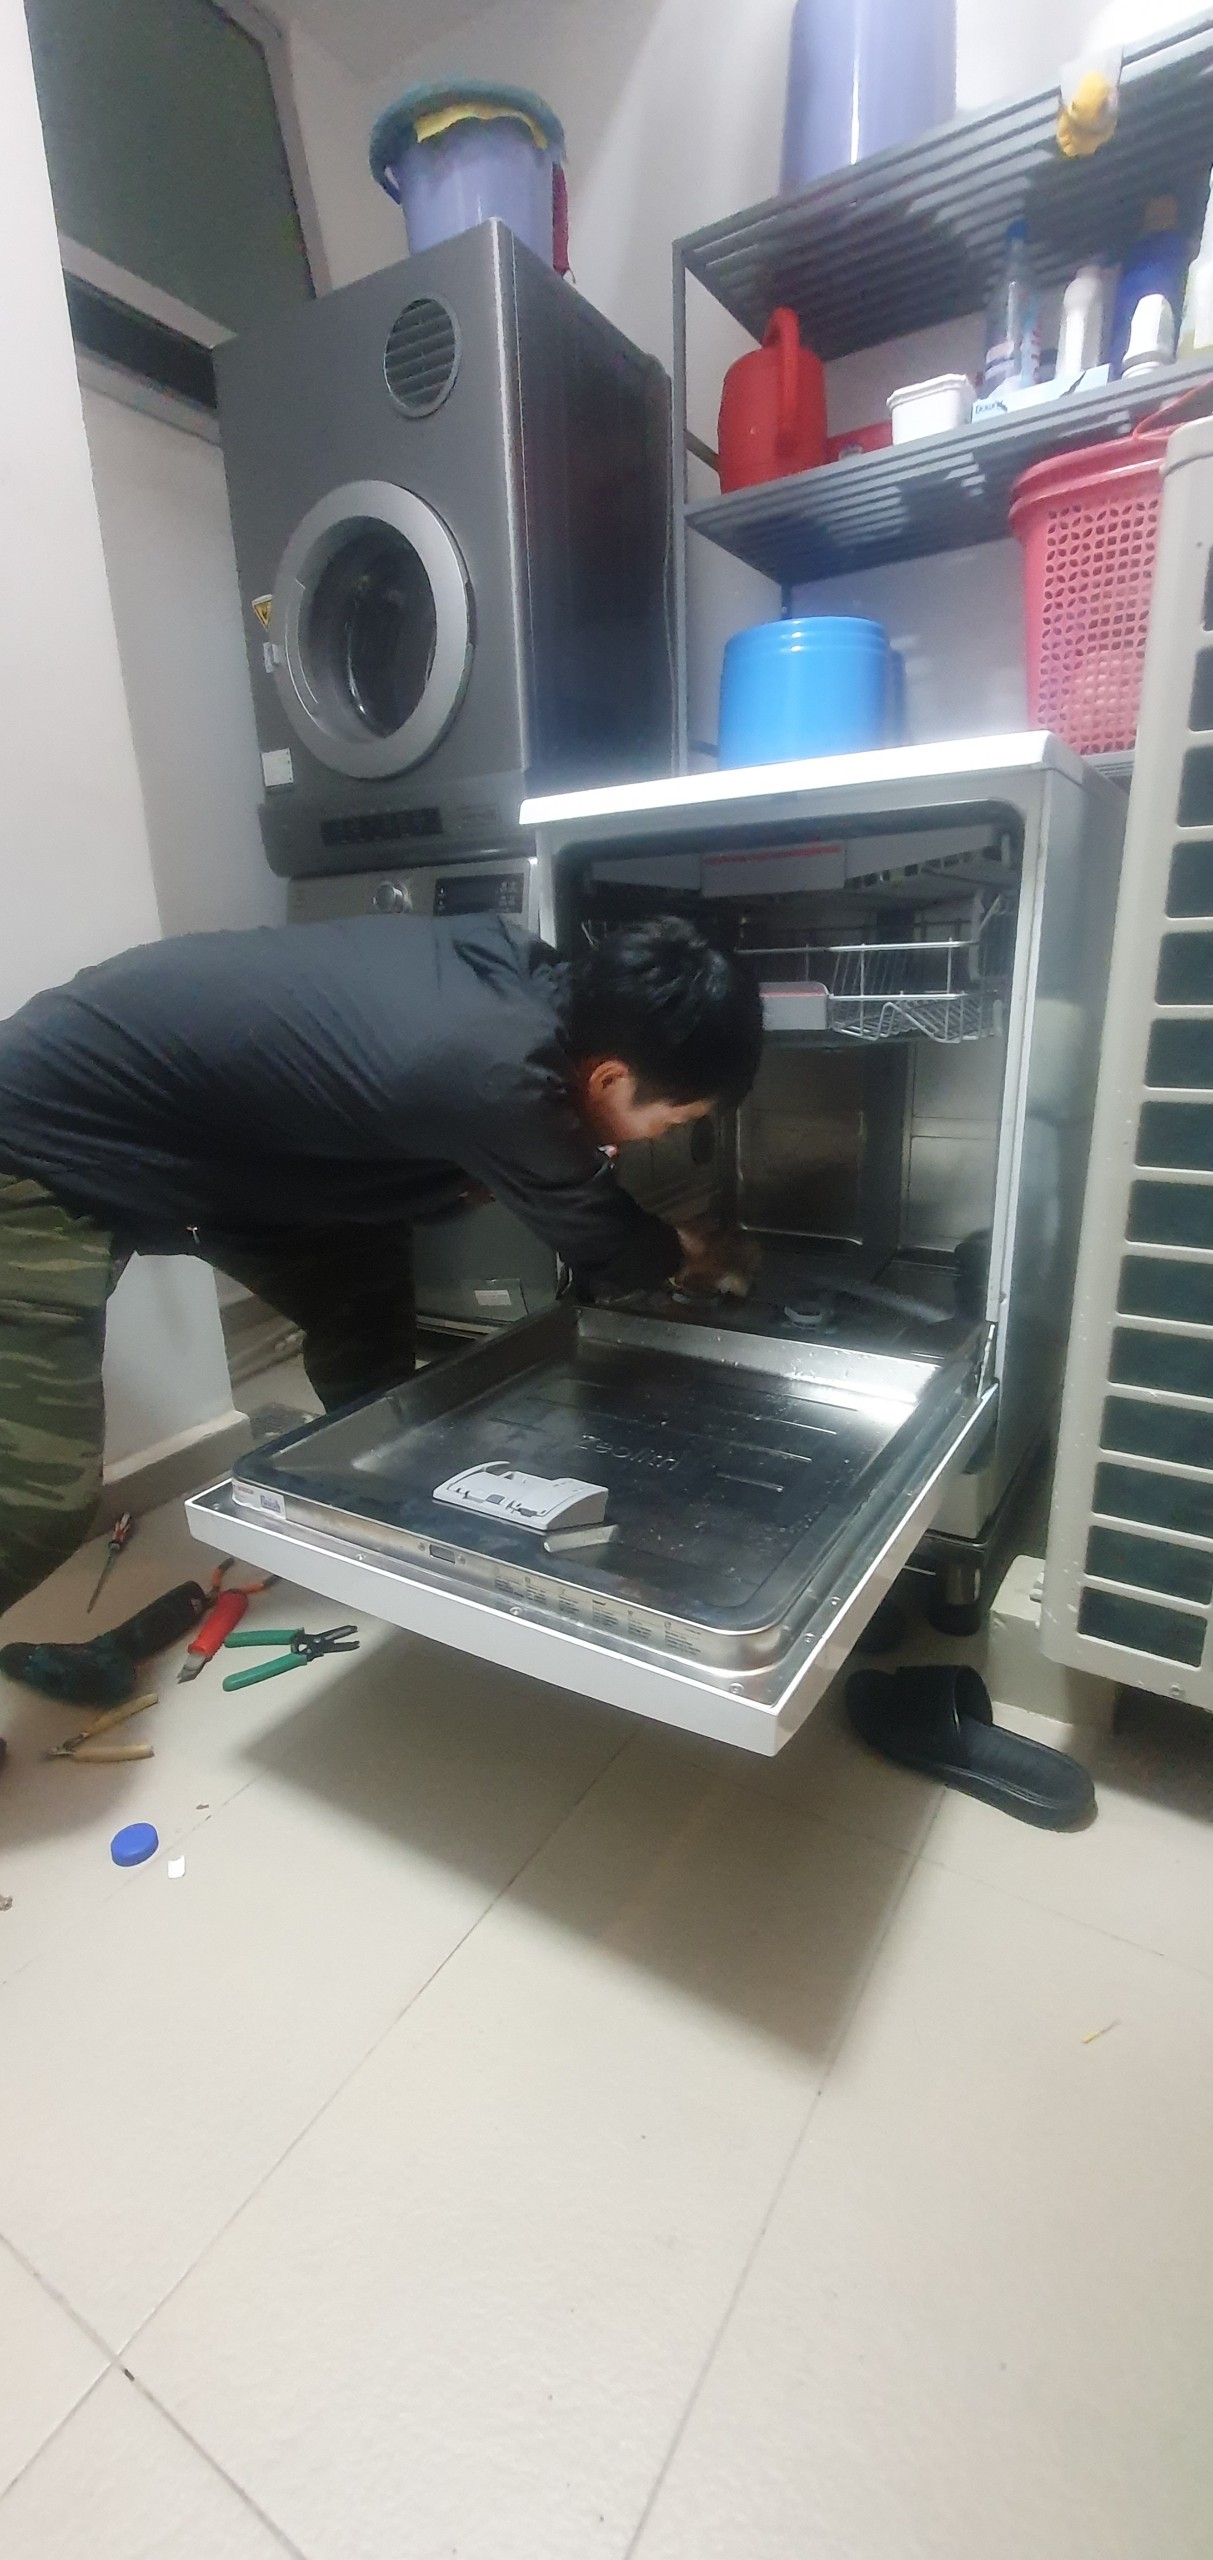 z4449111397564 2171007b1dd8ebe2746bb84bee128482 - Sửa máy rửa bát bị mất nước nóng tại quận 7 Sài Gòn